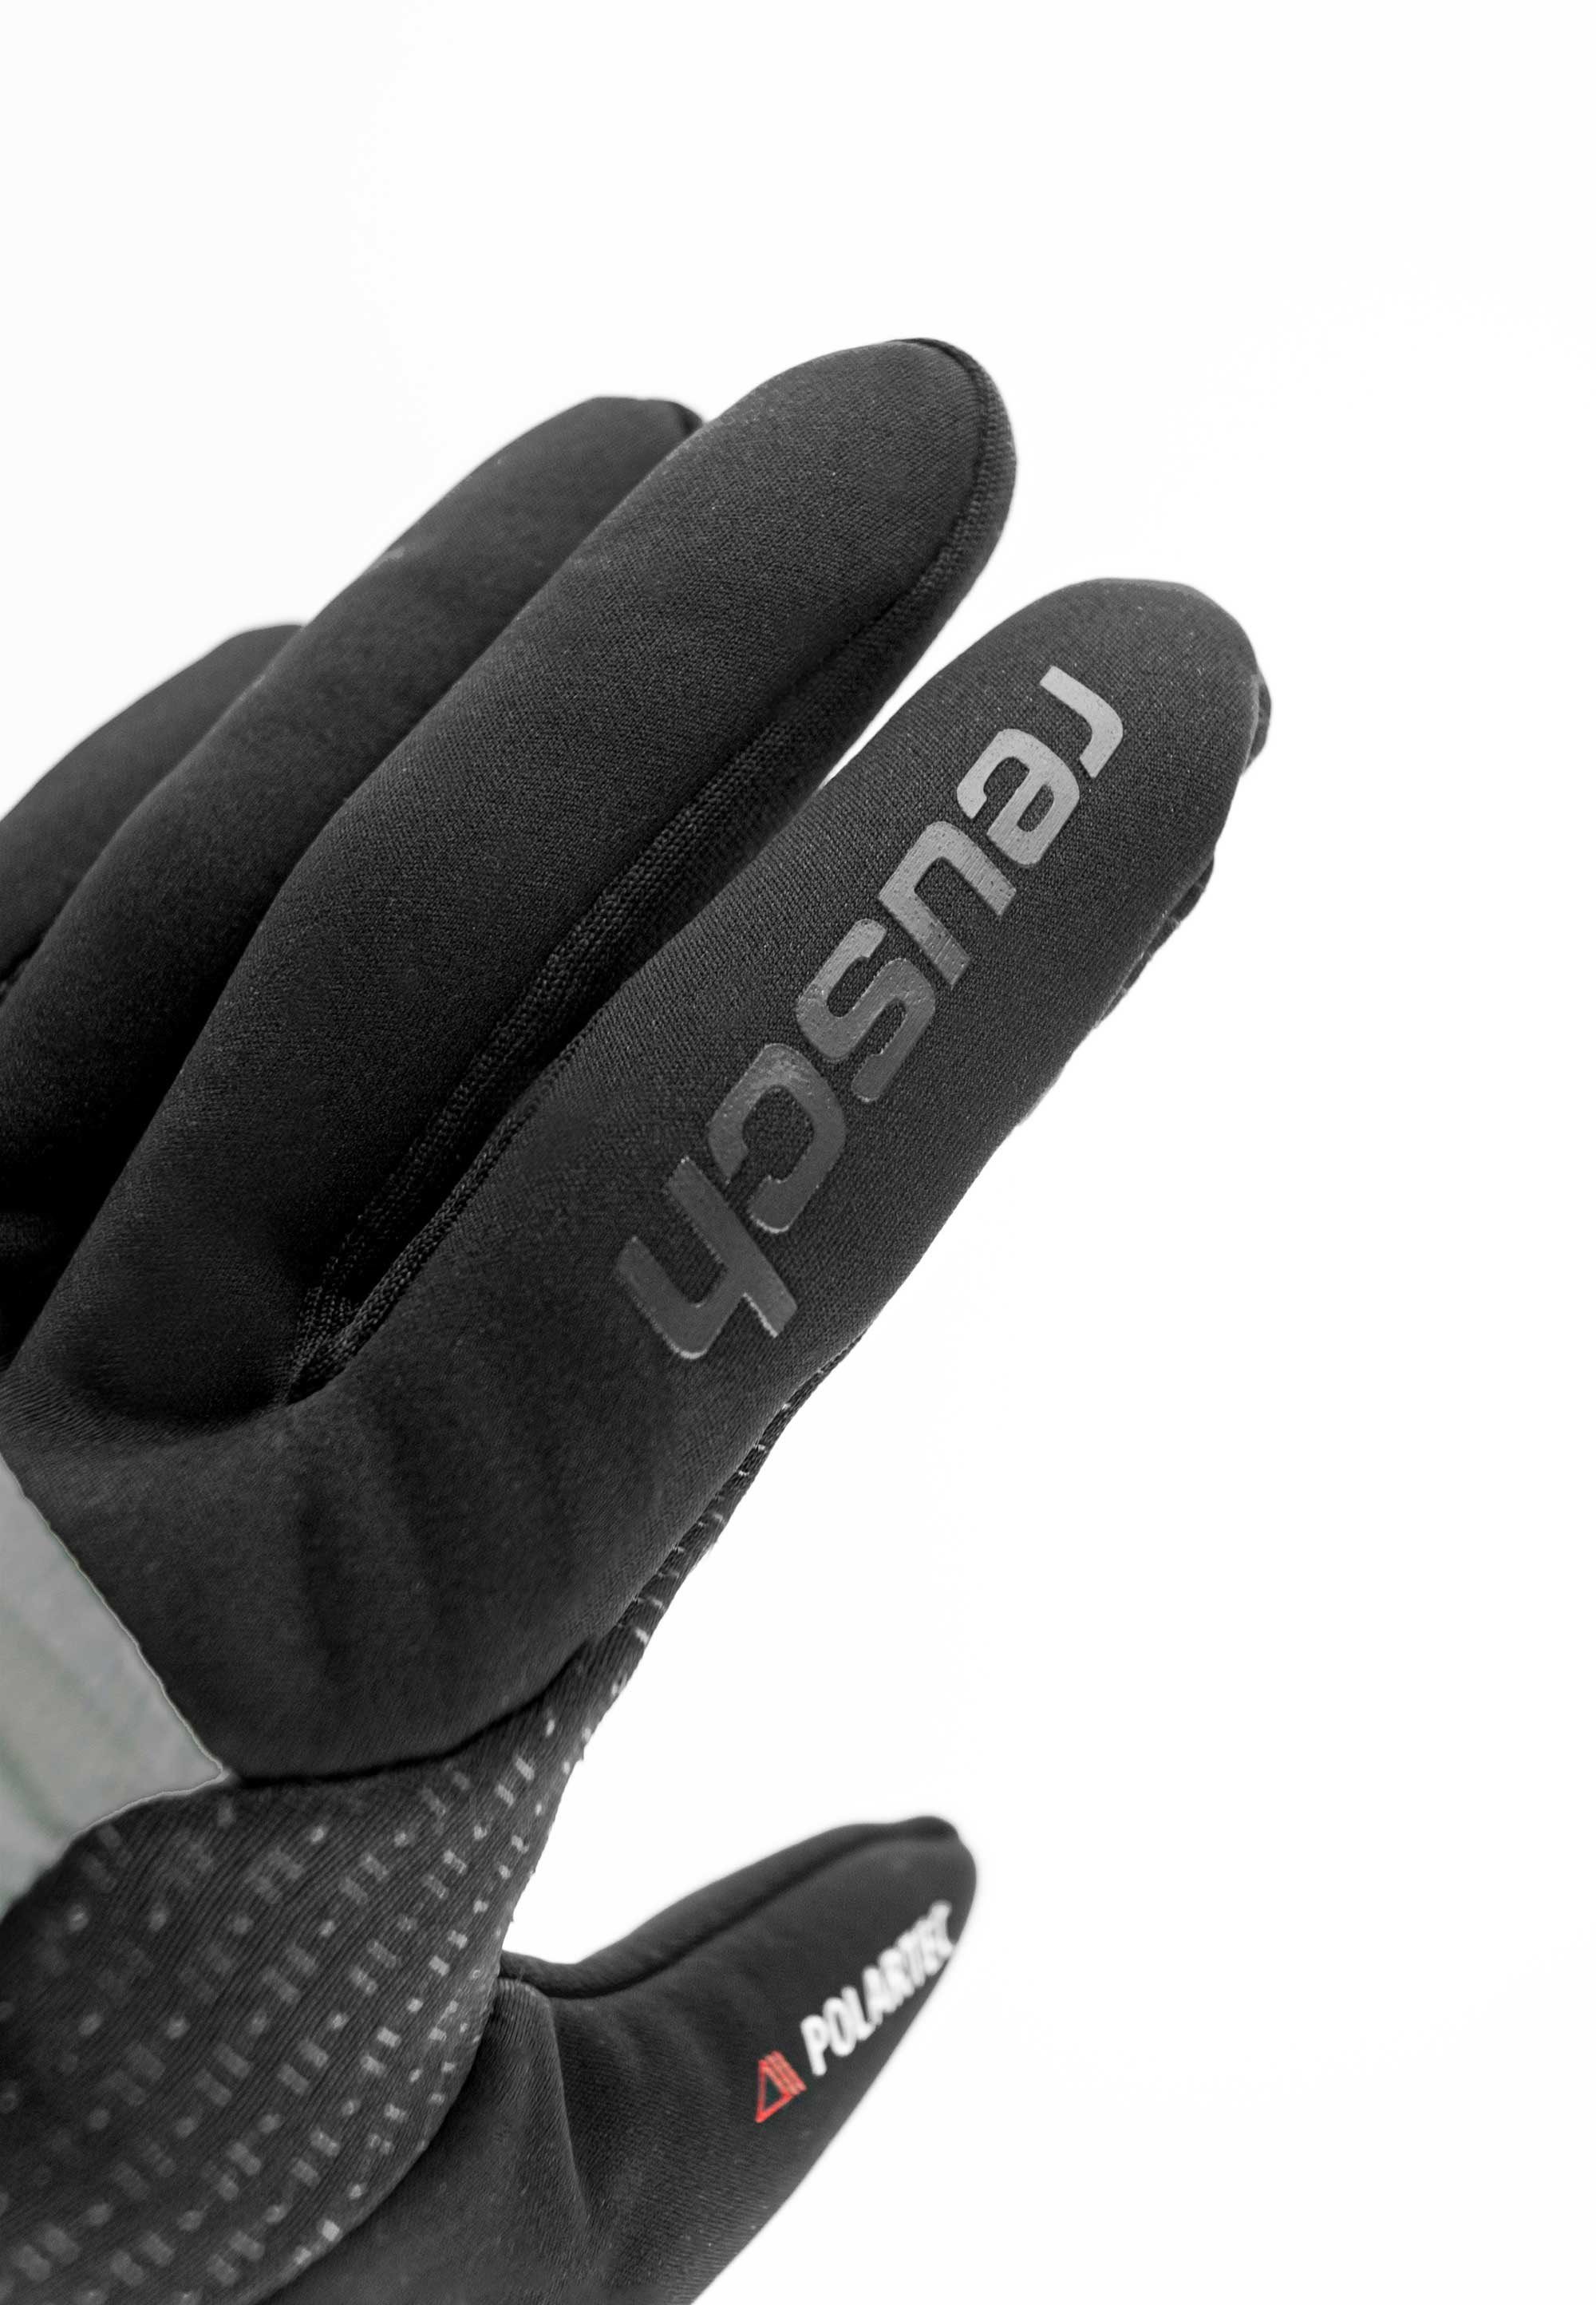 Reusch Skihandschuhe Garhwal Hybrid mit grau-schwarz Touchscreen-Funktion praktischer